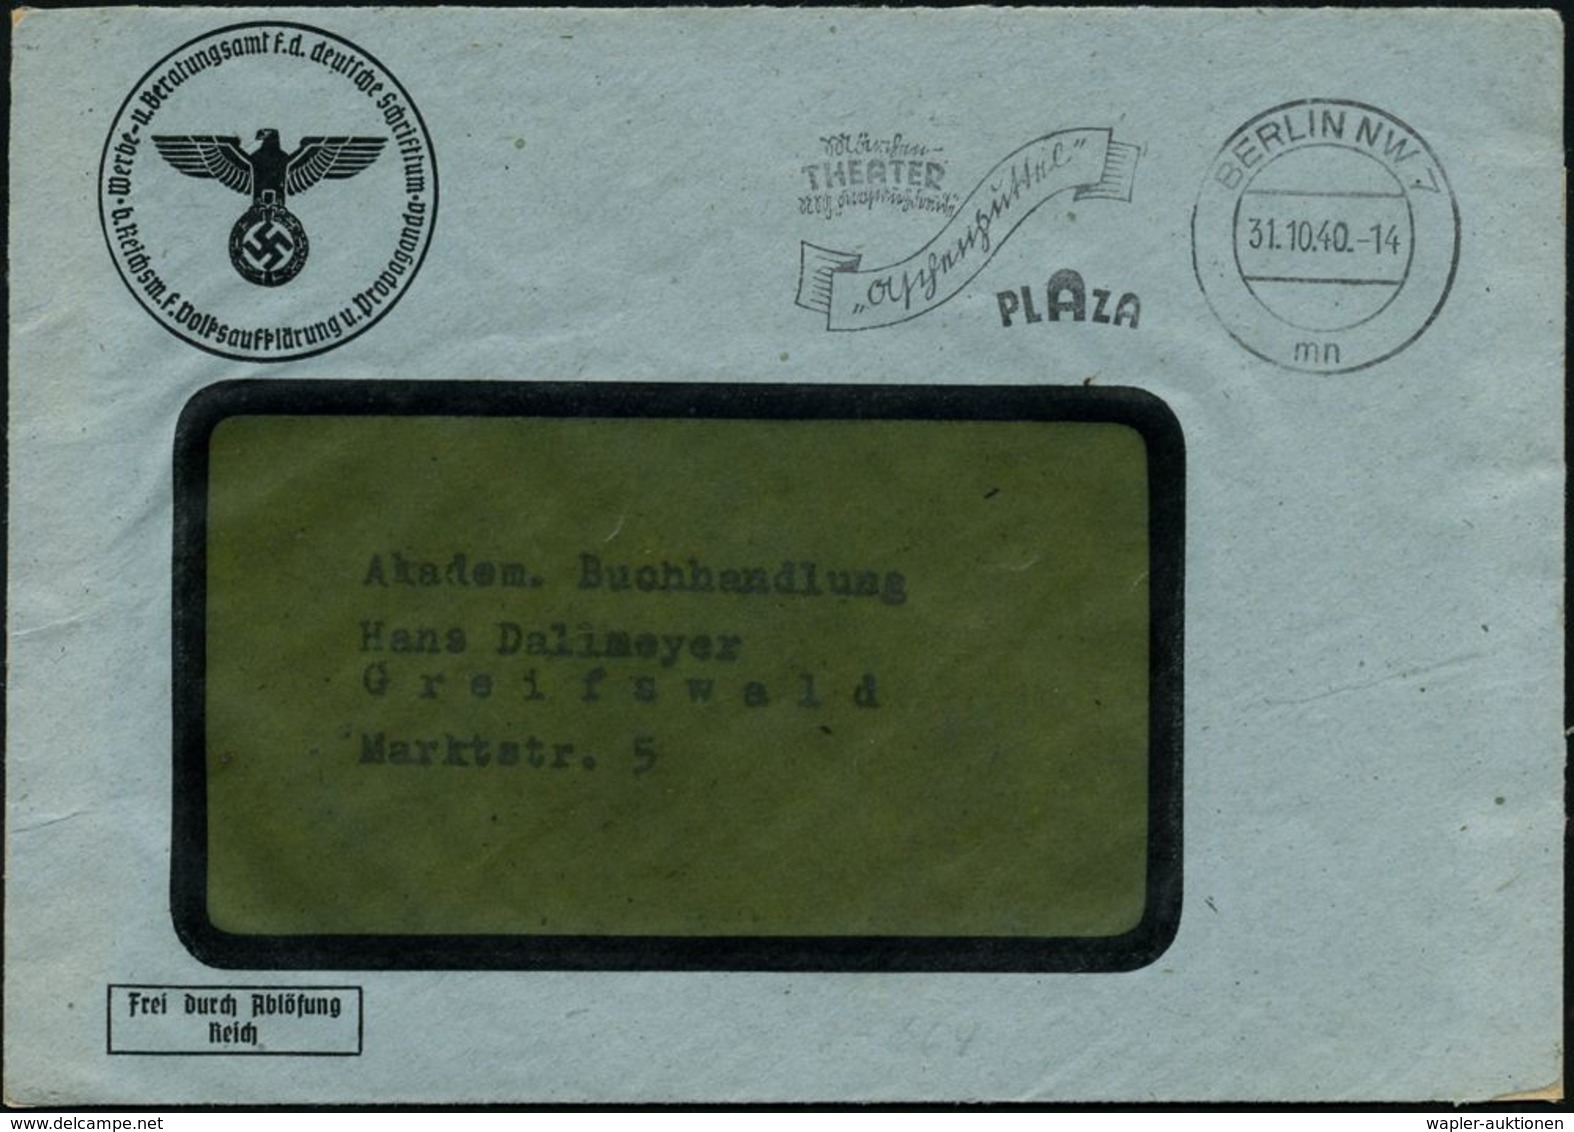 BERLIN-/ A/ NIKOLASSEE 1940 (26.4.) 1K-Brücke + Viol. Ra.: Gebührenpflichtige Dienstsache/Reichskulturkammer.. (NS-Adler - Music